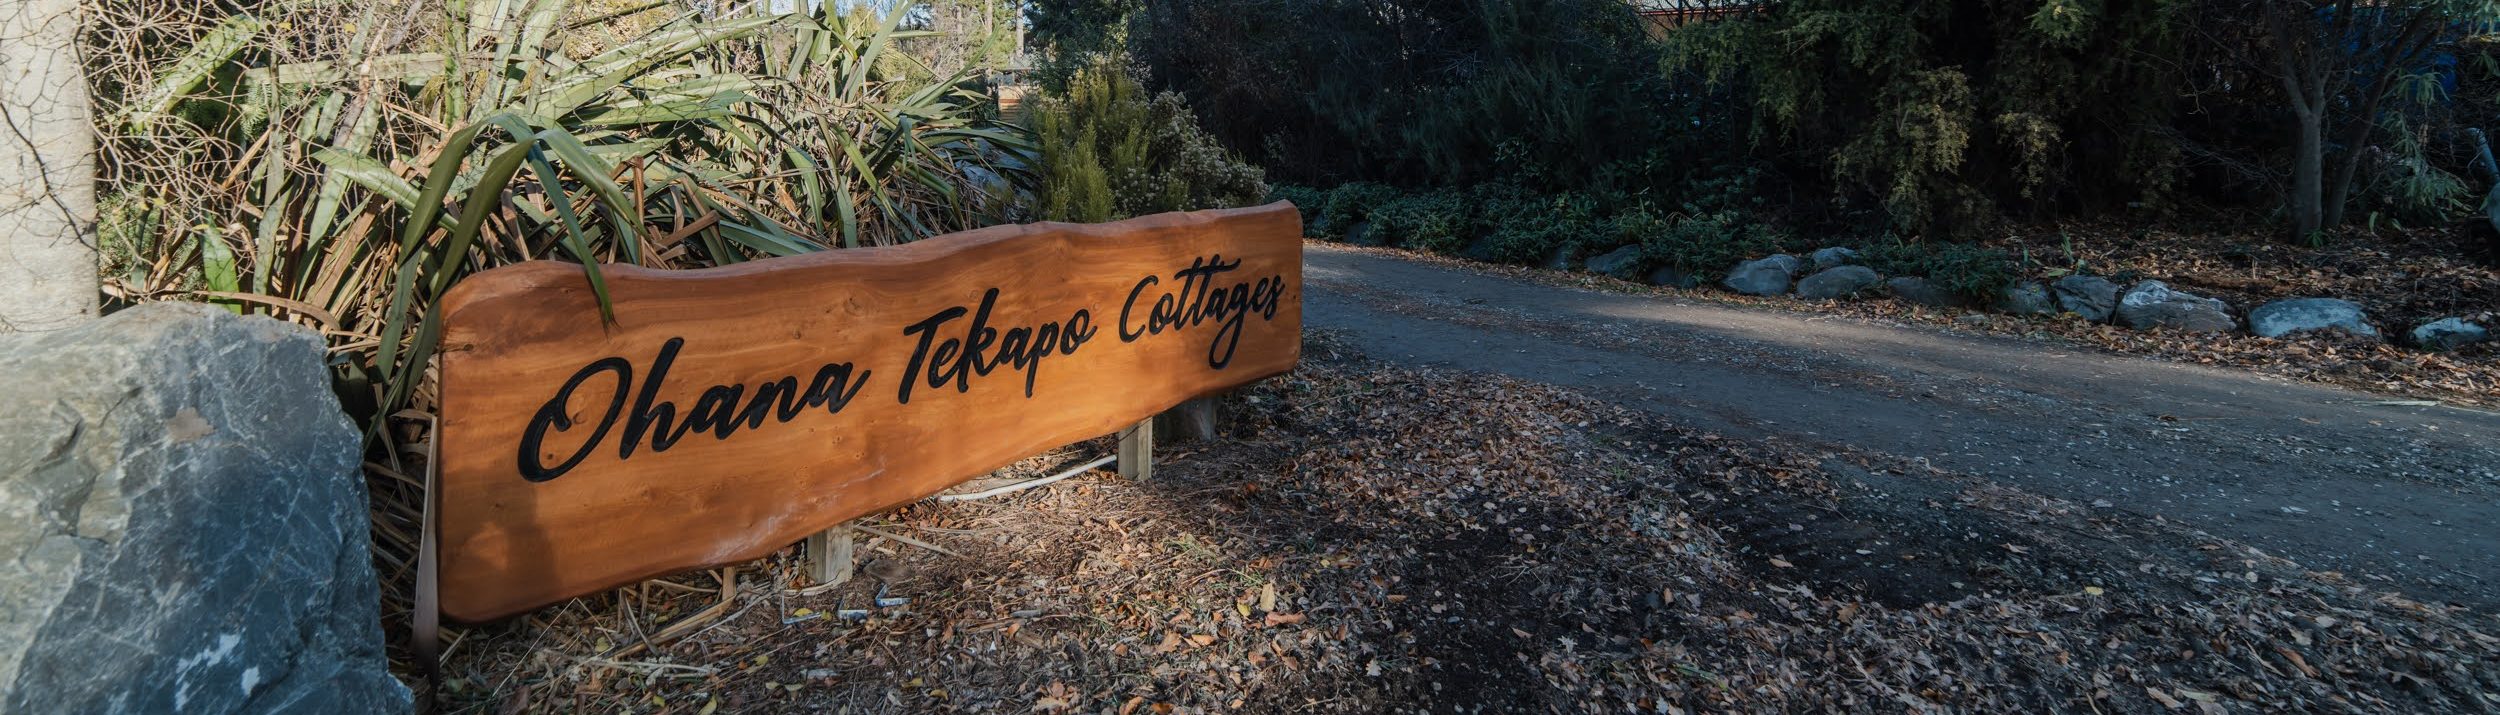 Tekapo Cottages